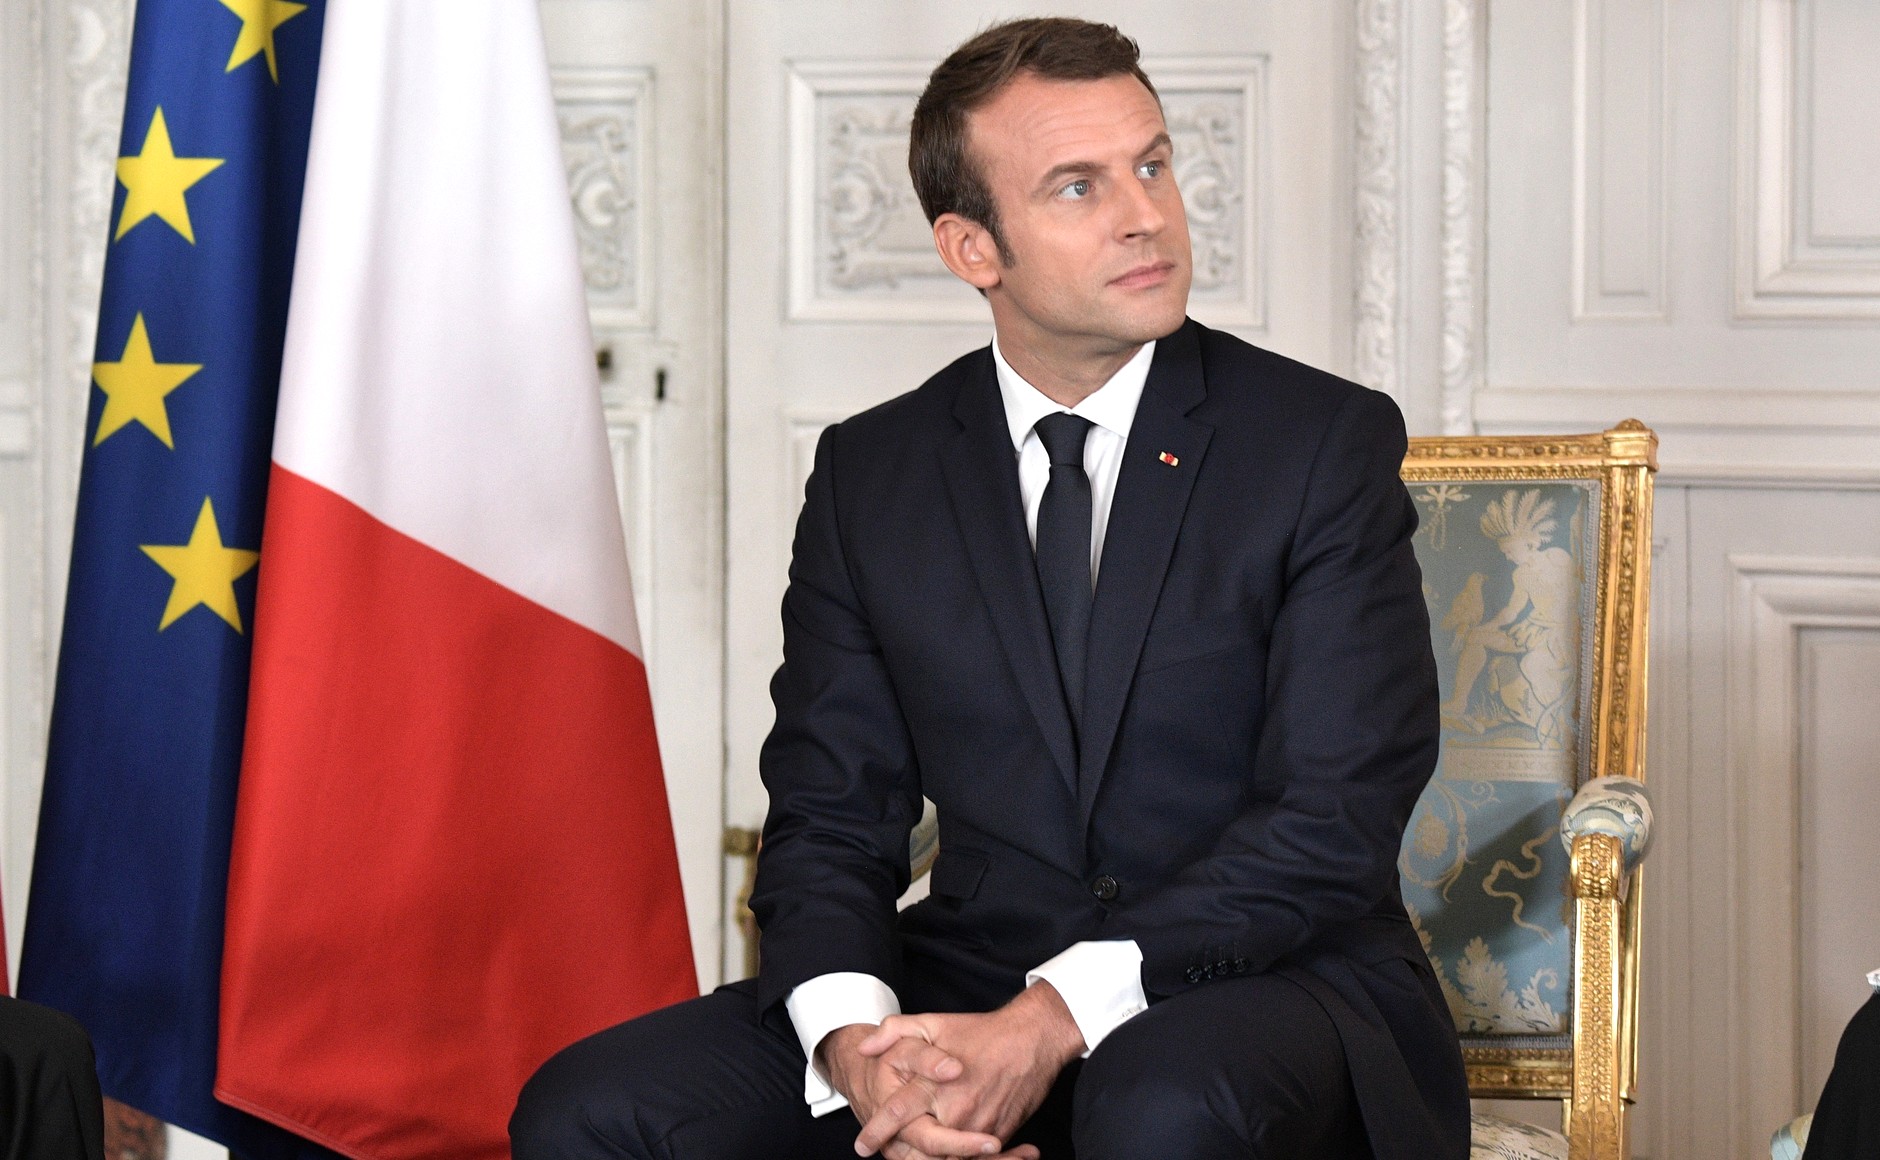     Emmanuel Macron annonce un reconfinement "avec des adaptations" en Outre-Mer

